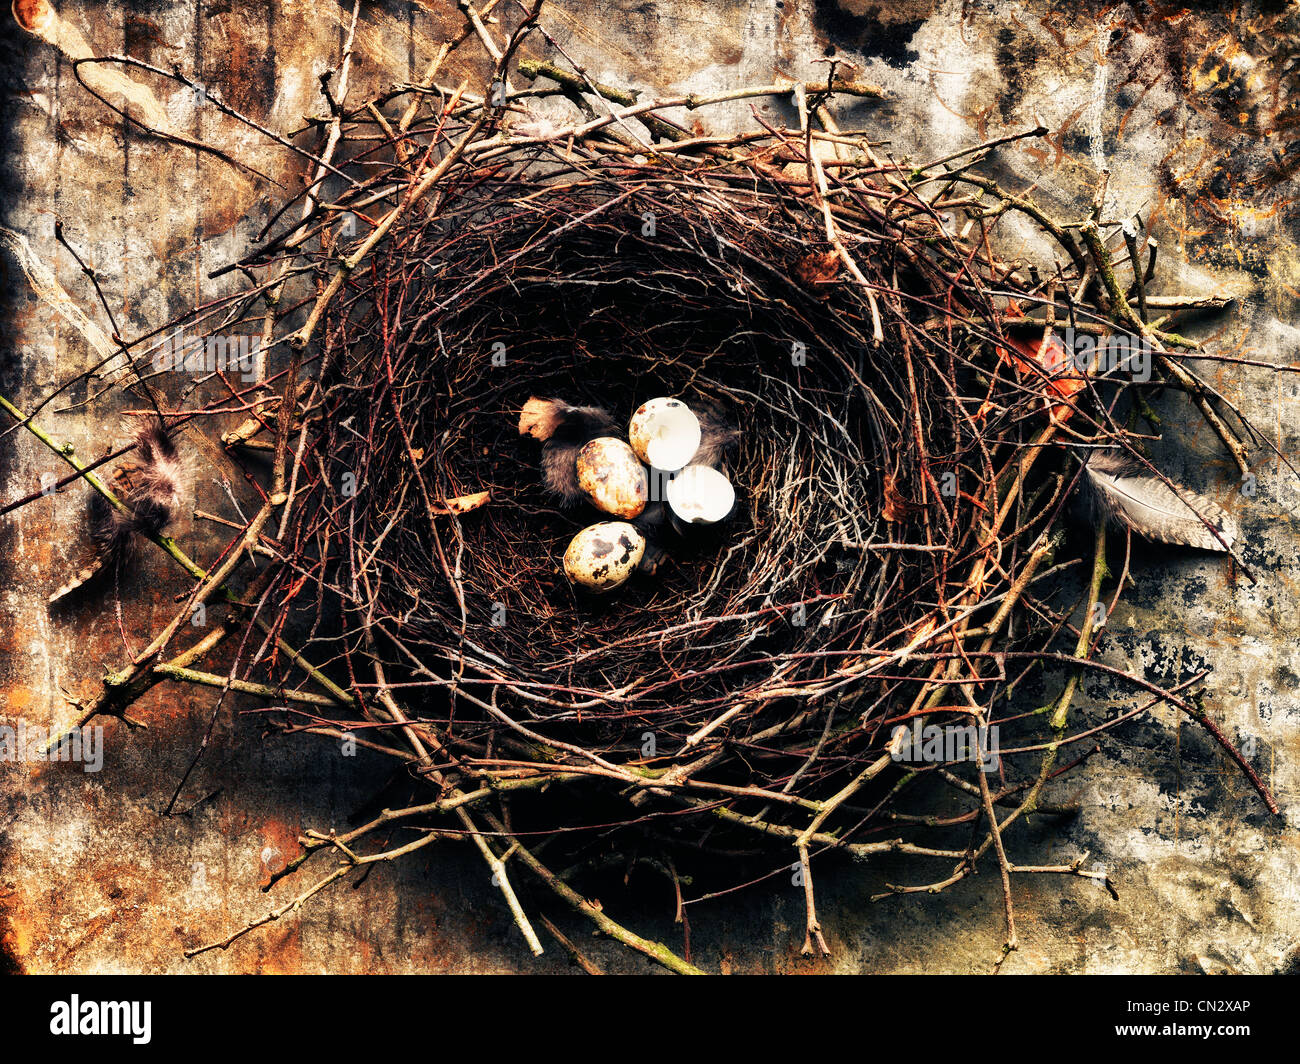 Birds nest with eggs Stock Photo